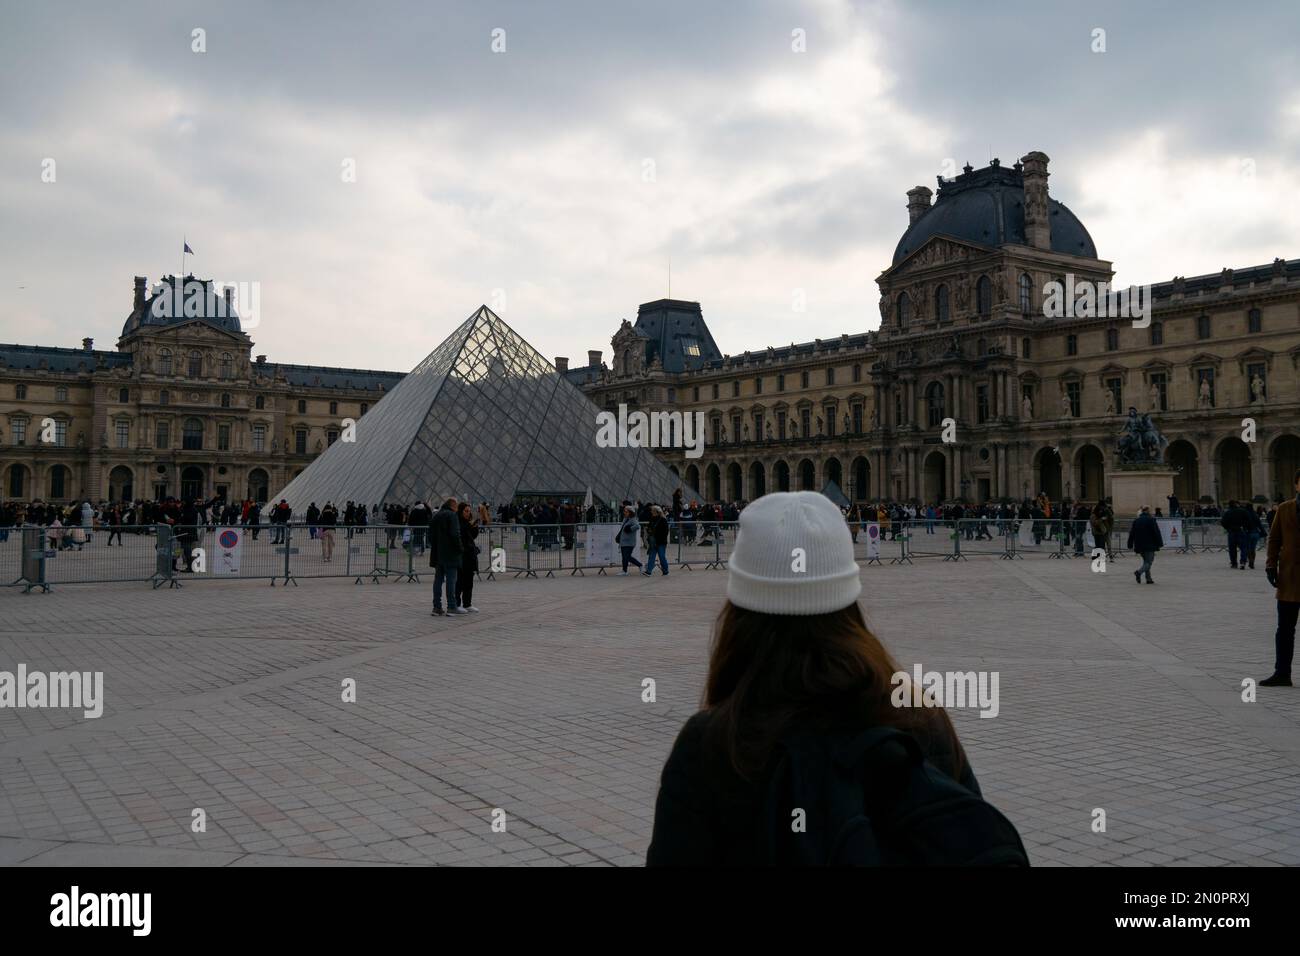 Pirâmide du Louvre. Le Louvre è il museo più visitato al mondo, la pirâmide di vetro. Visita di Parigi nel mese di gennaio con il freddo nei giorni di nuvoloso. Turisti. Foto Stock